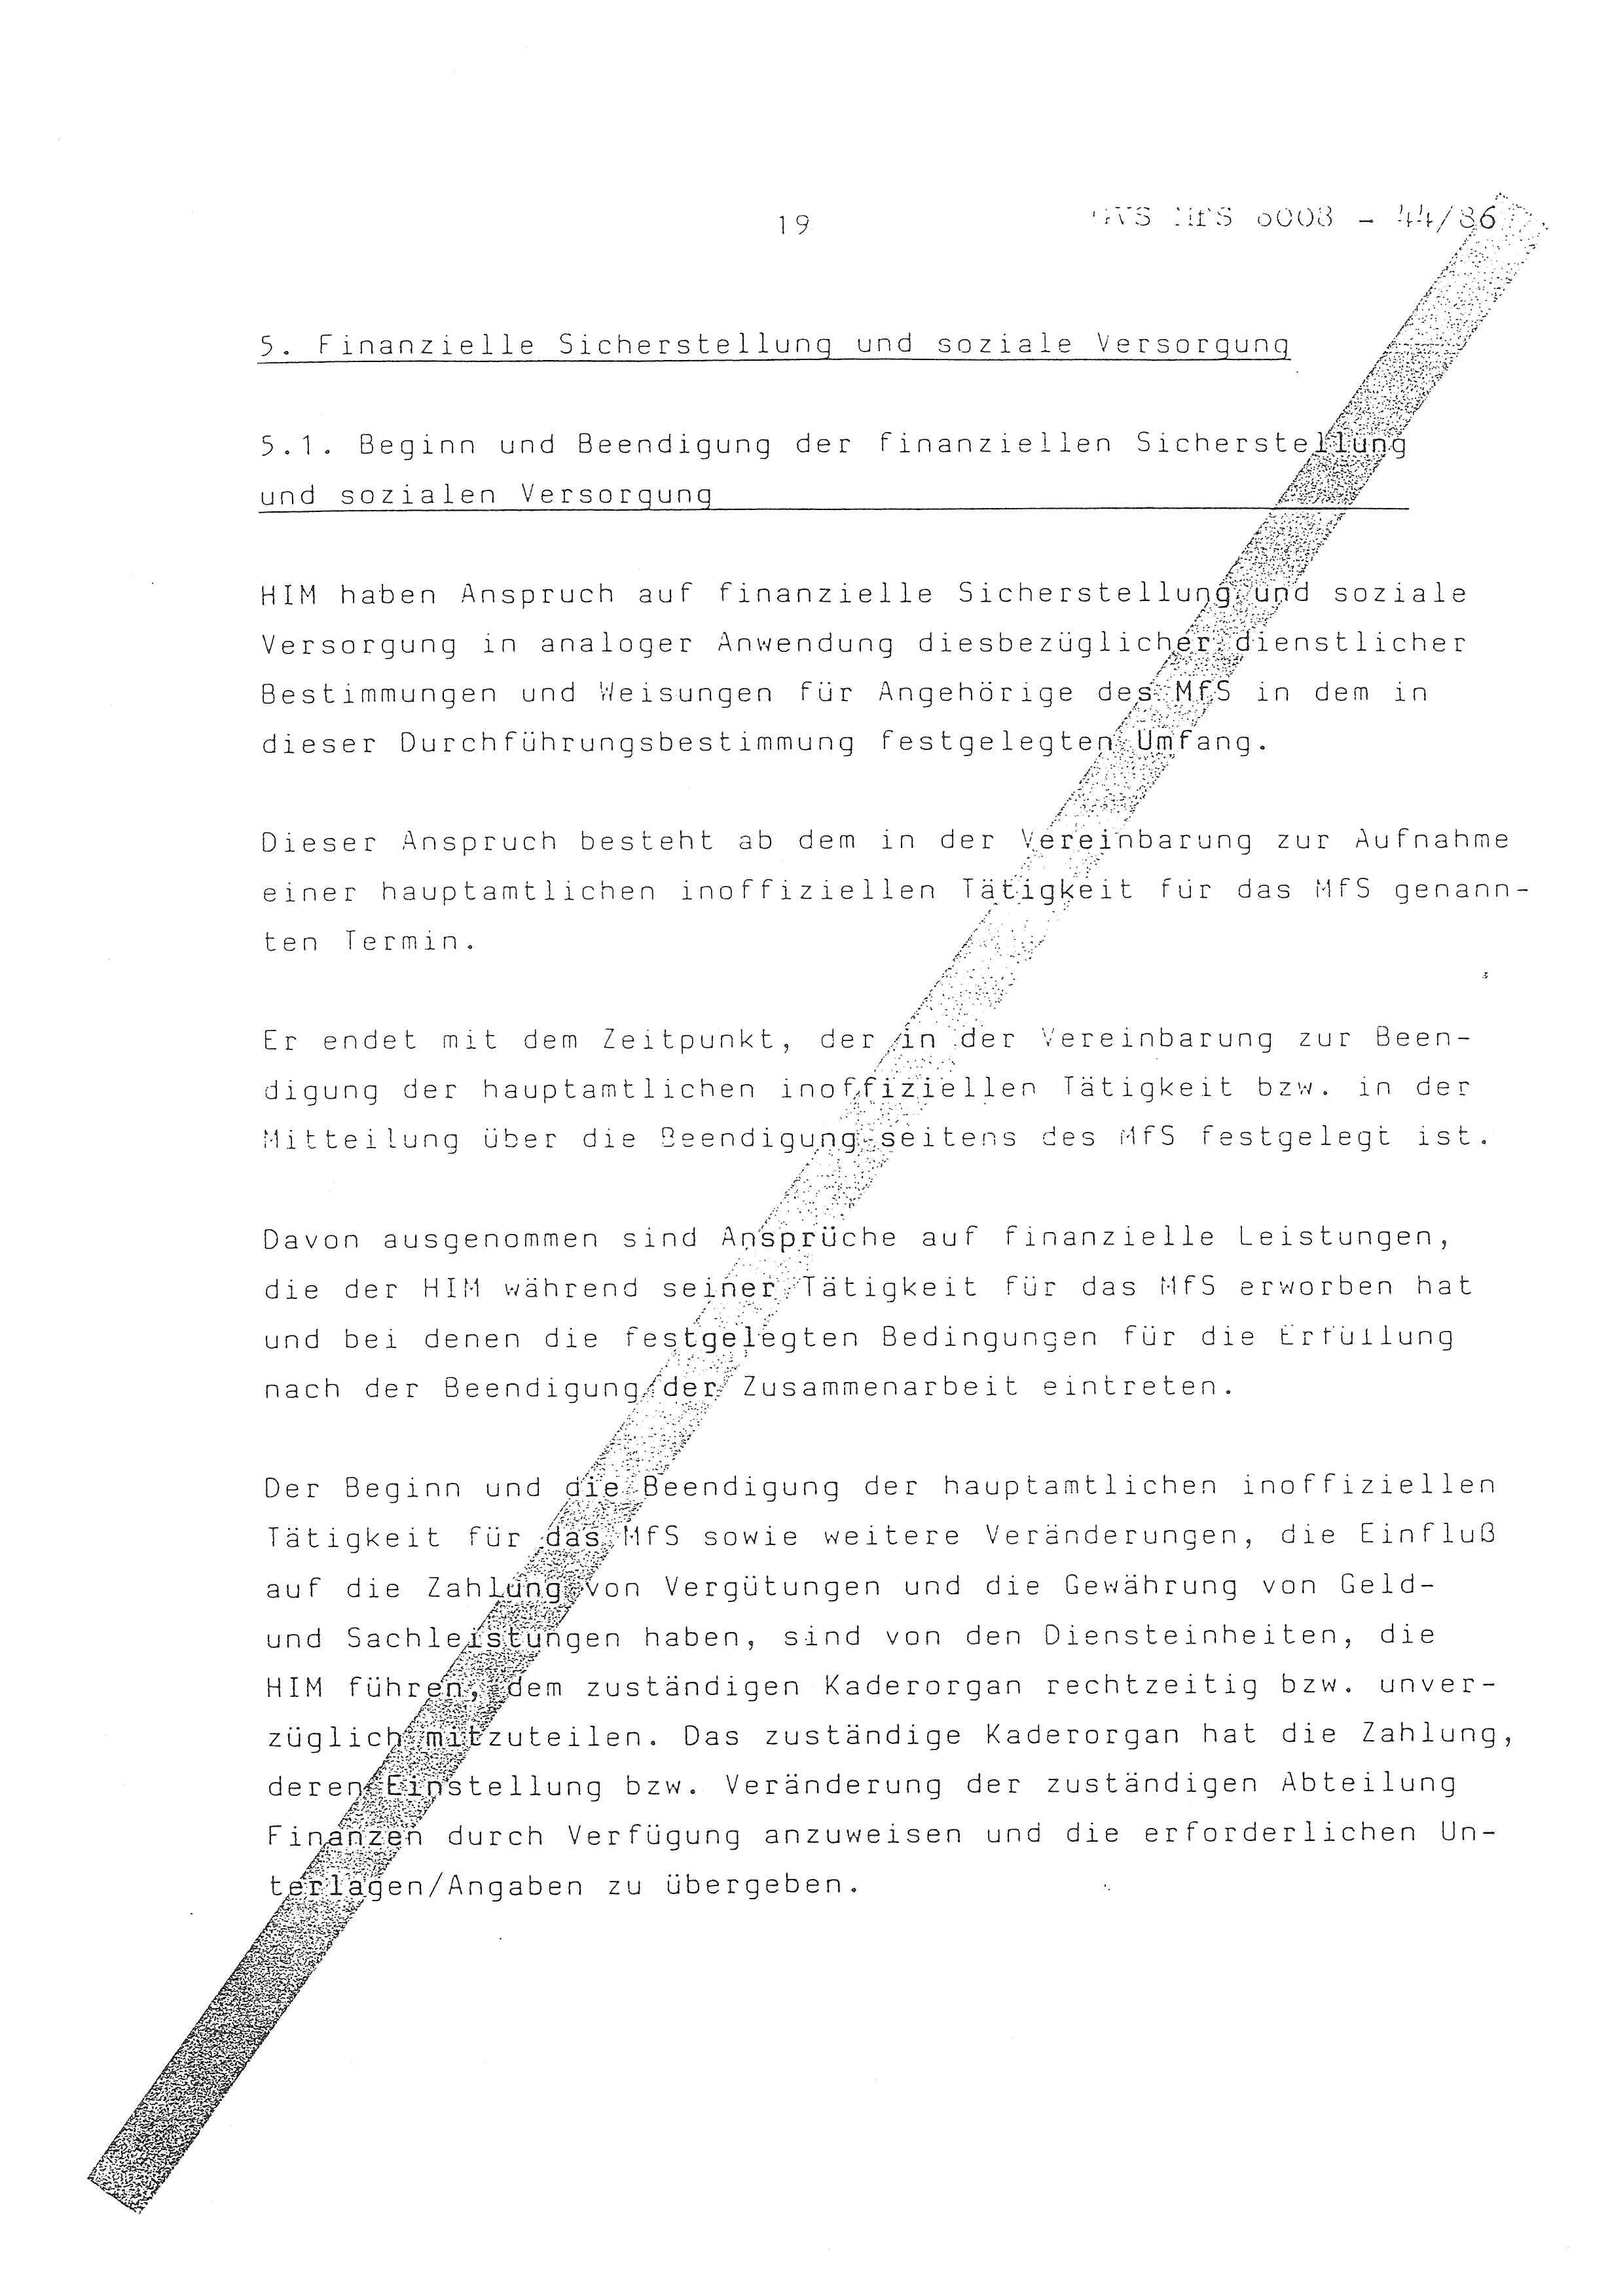 2. Durchführungsbestimmung zur Richtlinie 1/79 über die Arbeit mit hauptamtlichen Mitarbeitern des MfS (HIM), Deutsche Demokratische Republik (DDR), Ministerium für Staatssicherheit (MfS), Der Minister (Mielke), Geheime Verschlußsache (GVS) ooo8-44/86, Berlin 1986, Seite 19 (2. DB RL 1/79 DDR MfS Min. GVS ooo8-44/86 1986, S. 19)